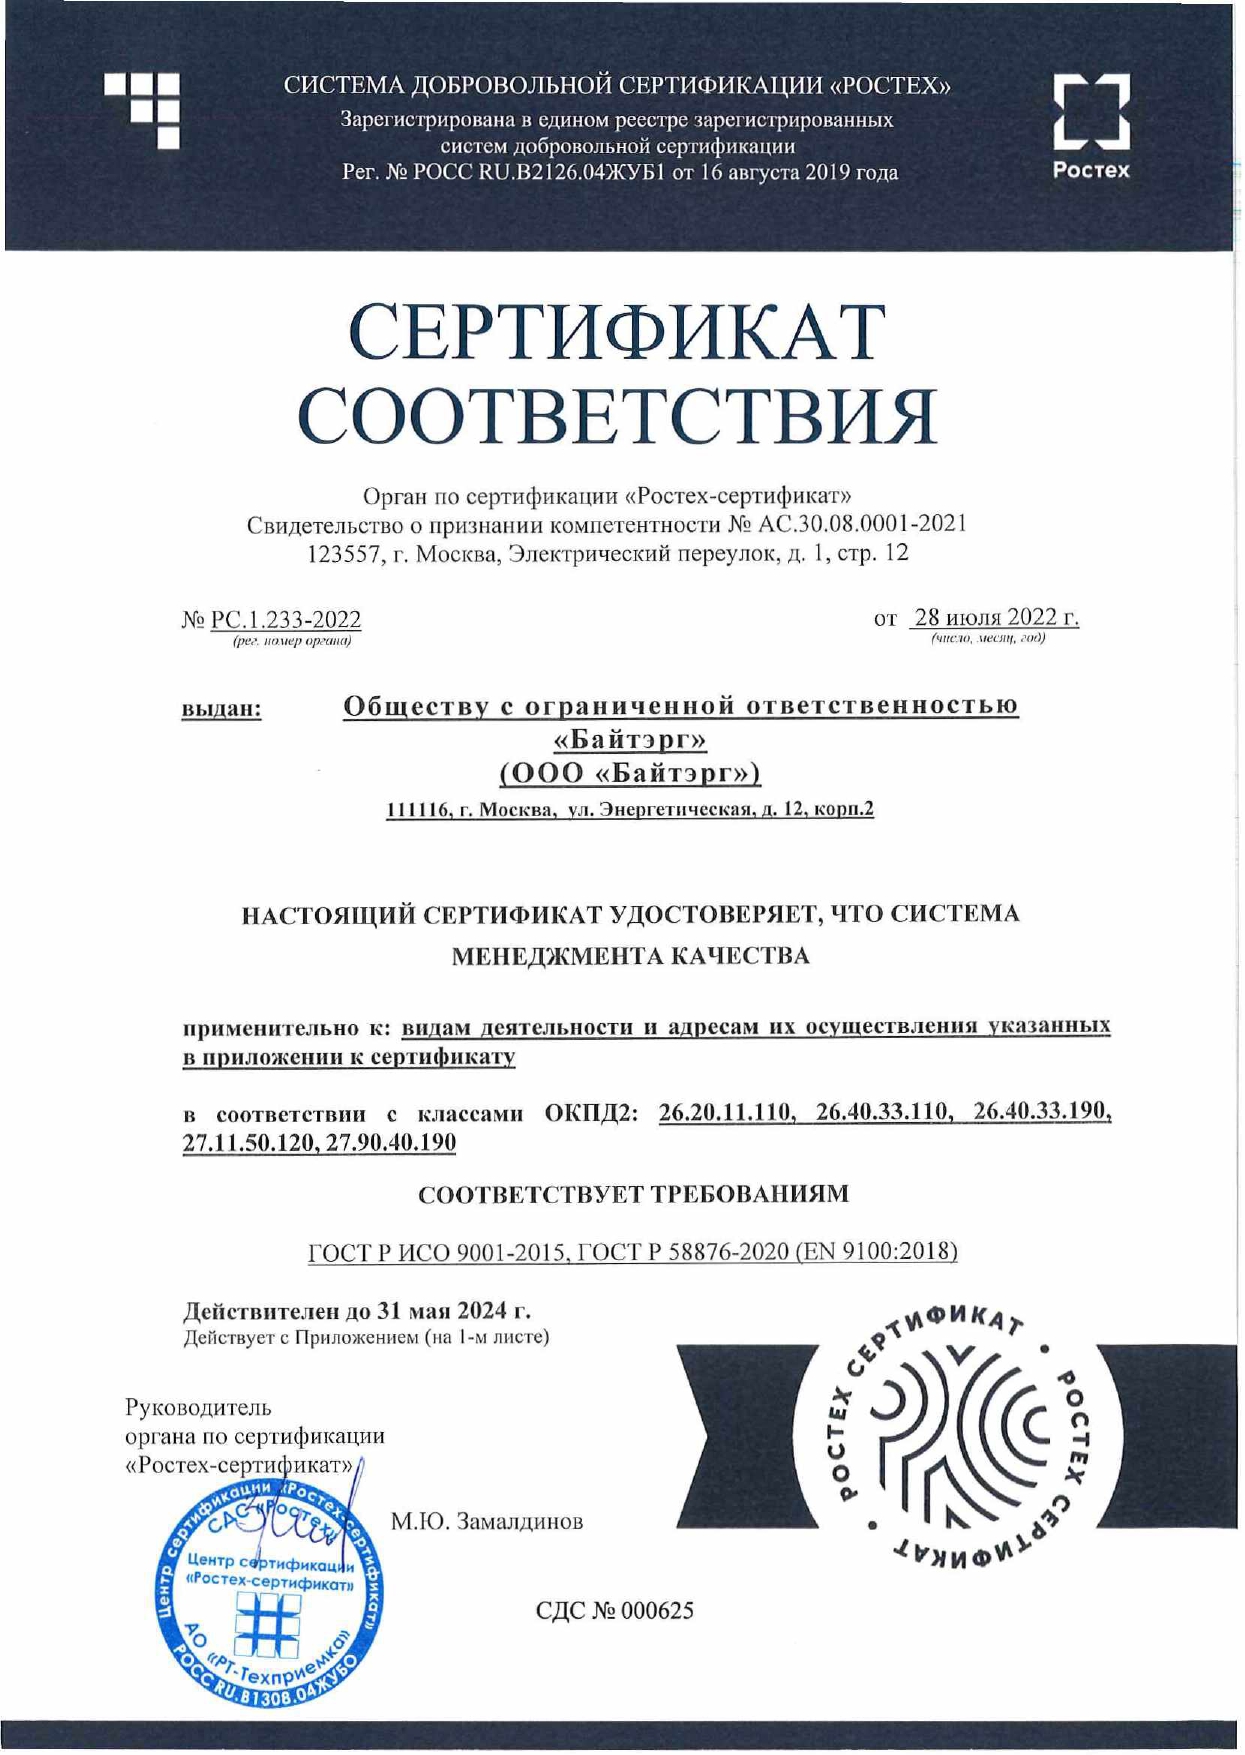 Сертификат соответствия ГОСТ до 31 мая 2024 года.